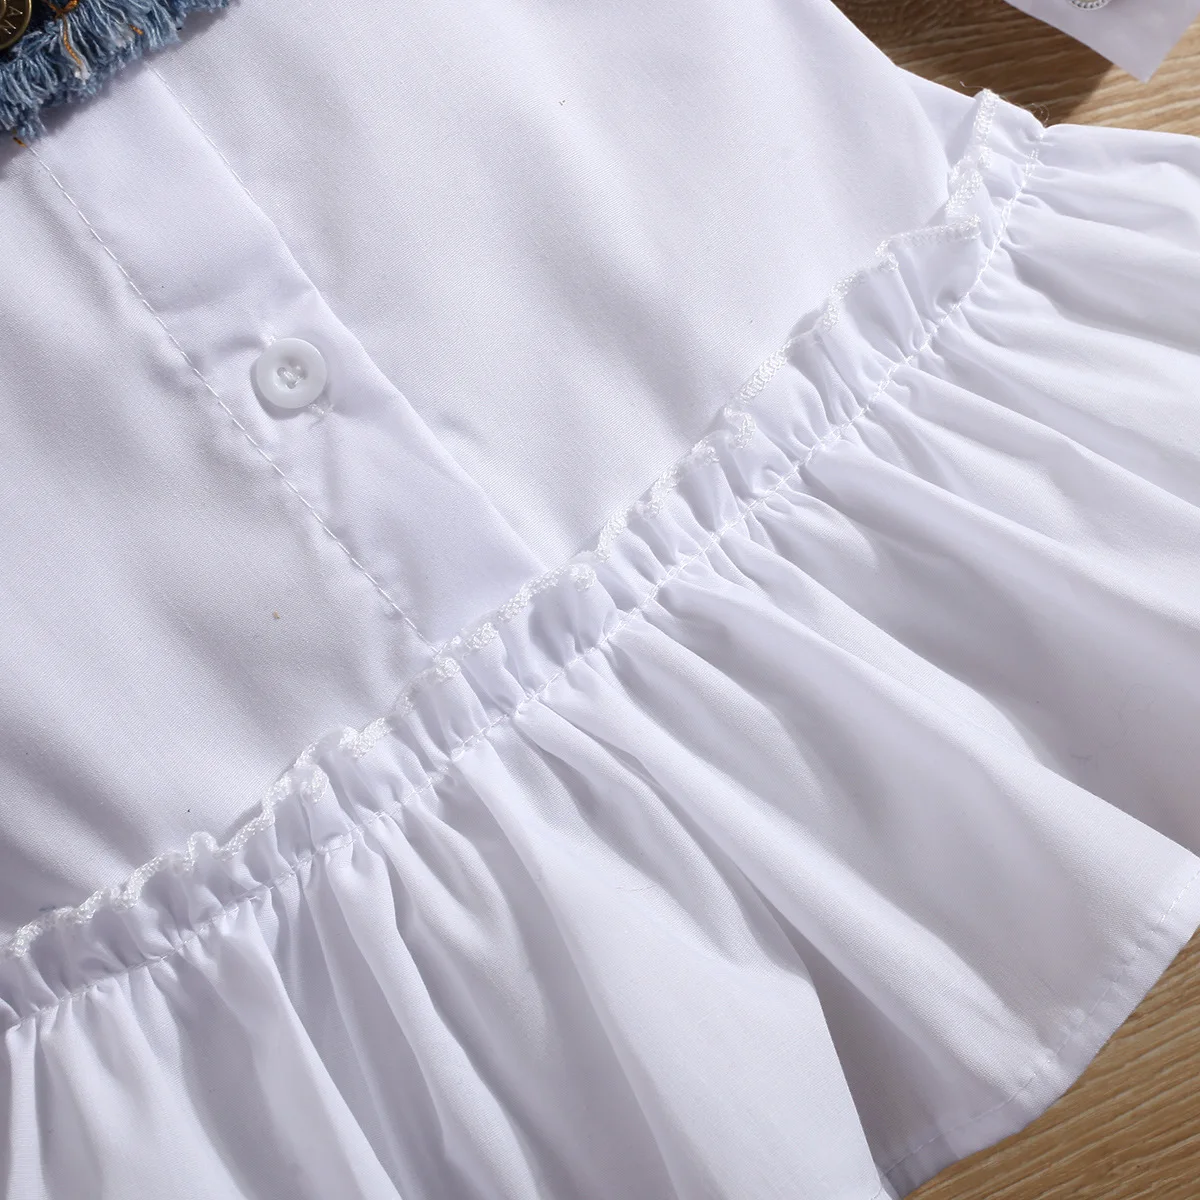 2022 spring summer children's lapel shirt skirt girls ruffles dress denim vest two-piece set girls casual dresses